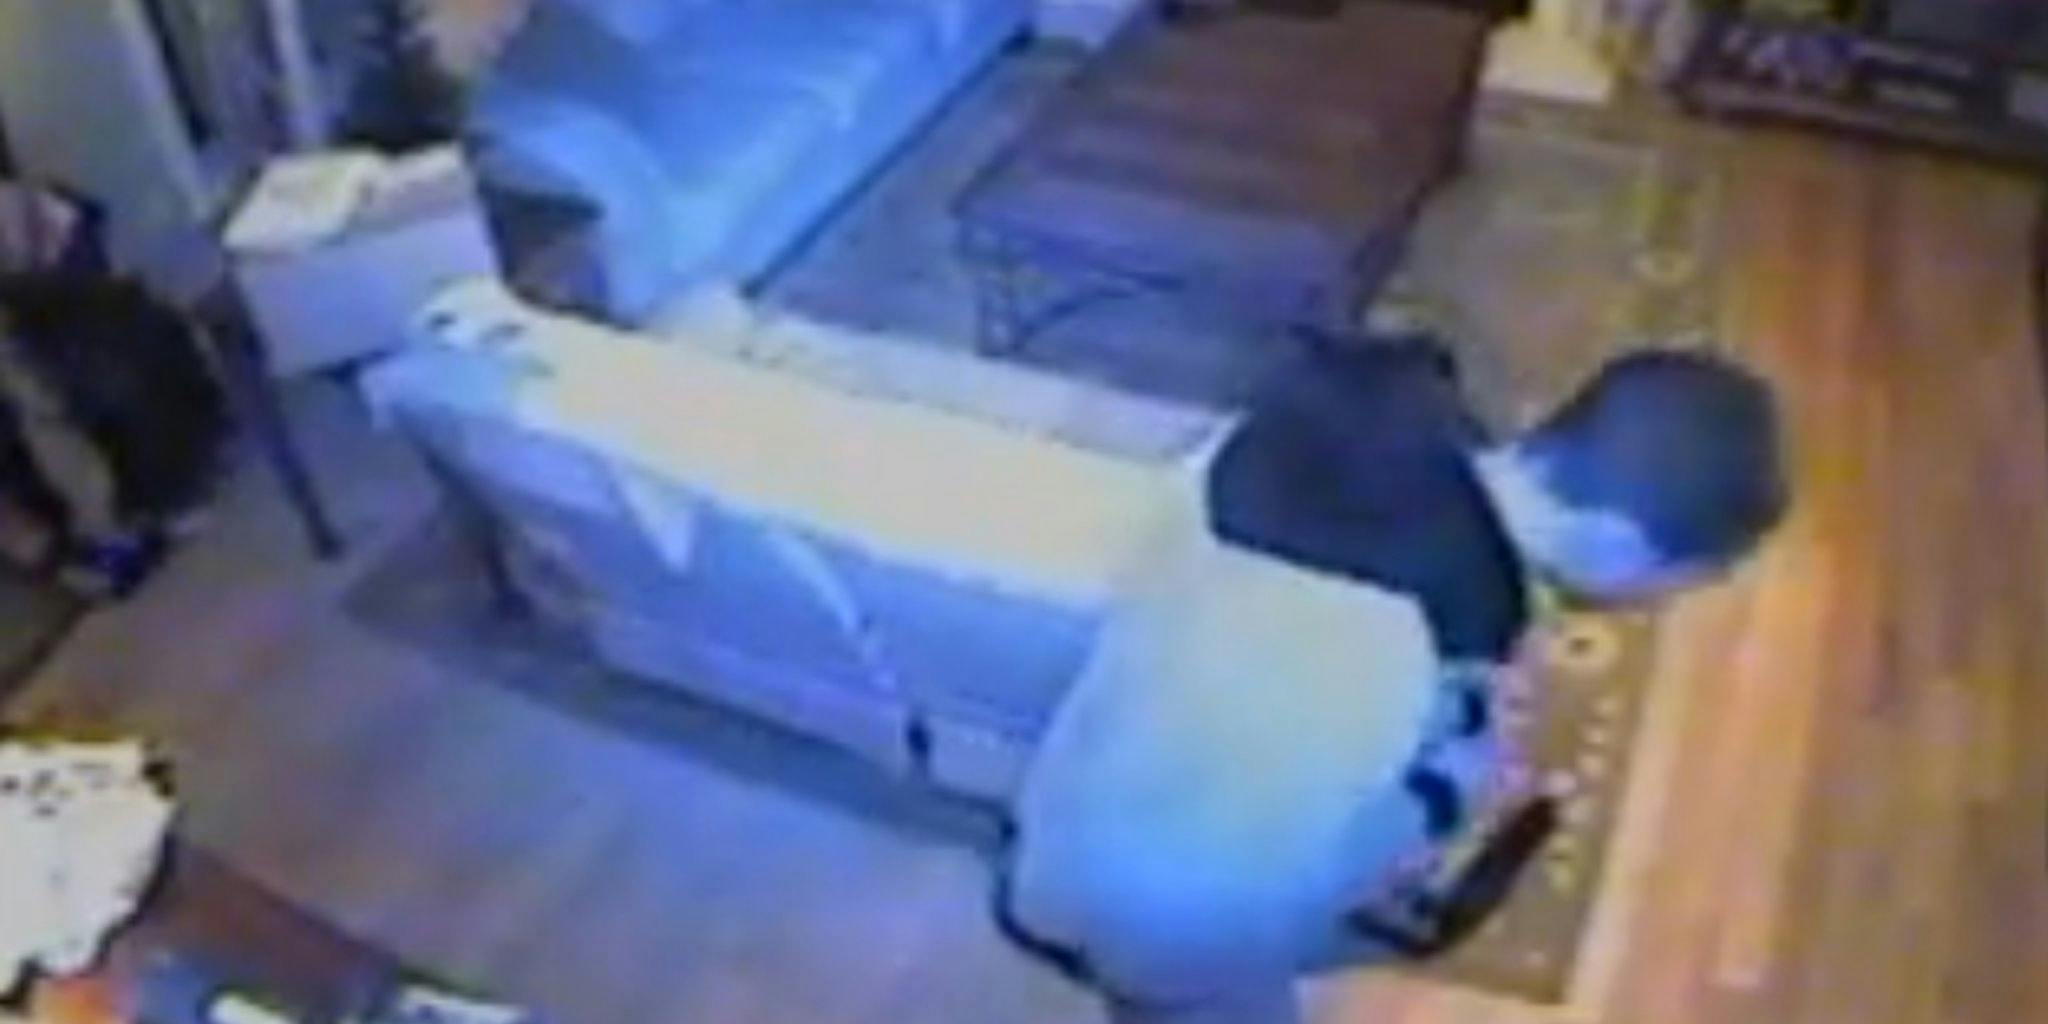 Burglars ransack redditor's house, get caught on video - The Daily Dot